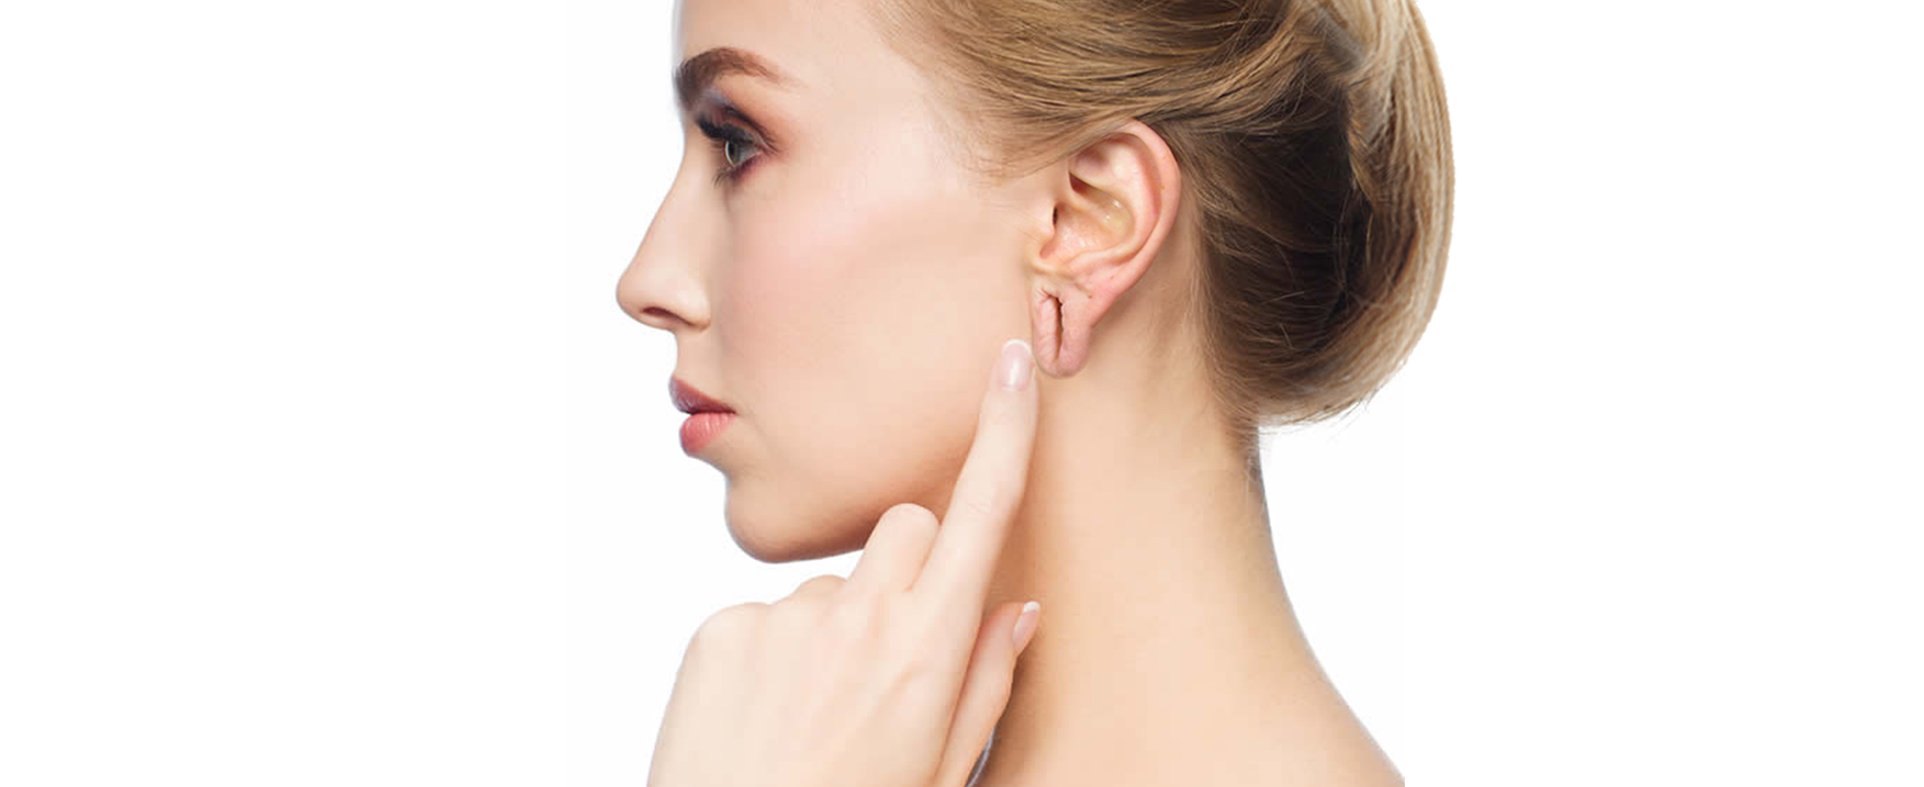 Ear-Lobe-Repair